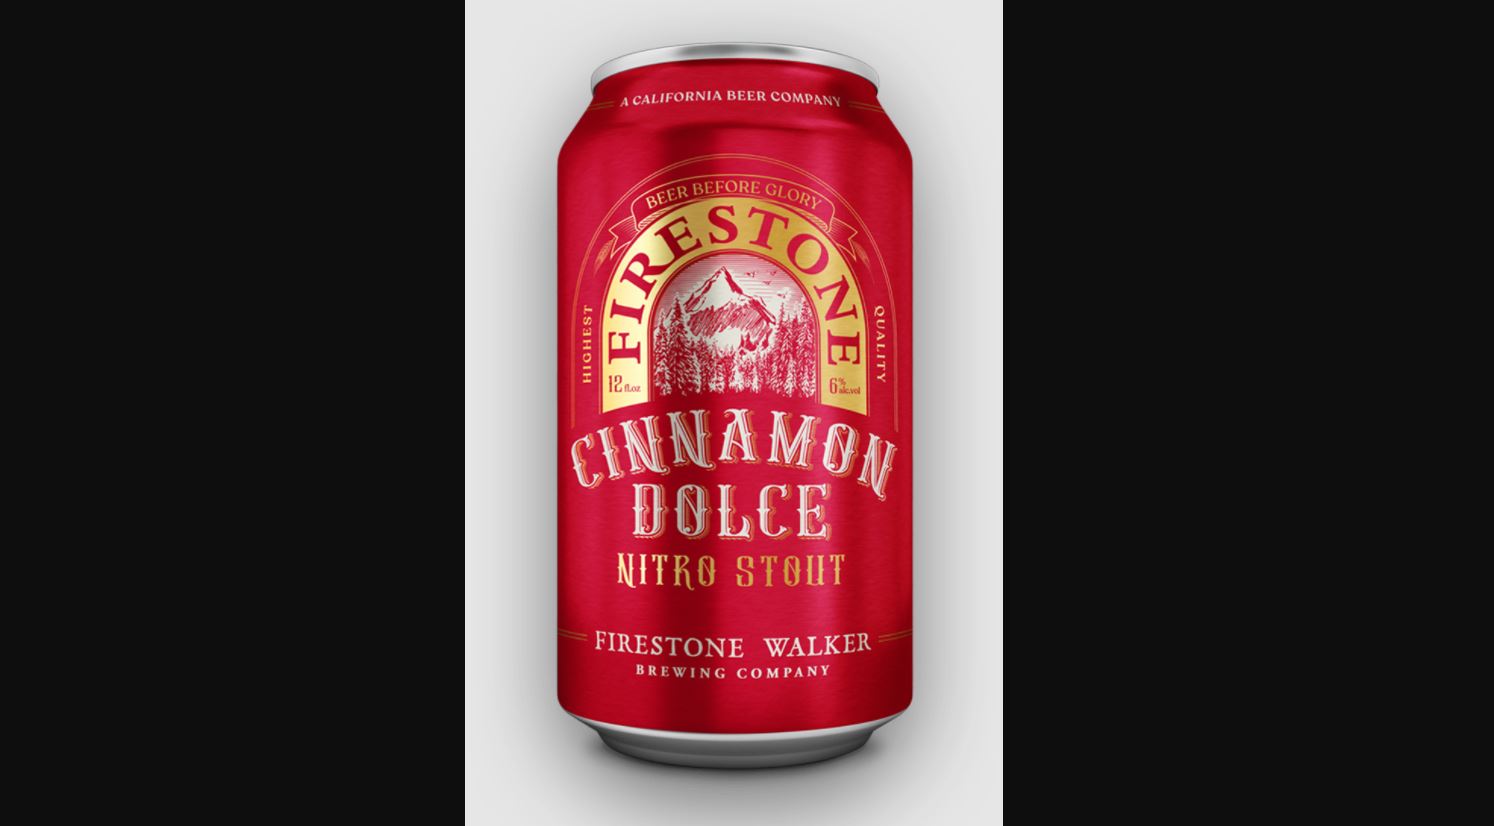 Firestone Walker Cinnamon Dolce Nitro Stout